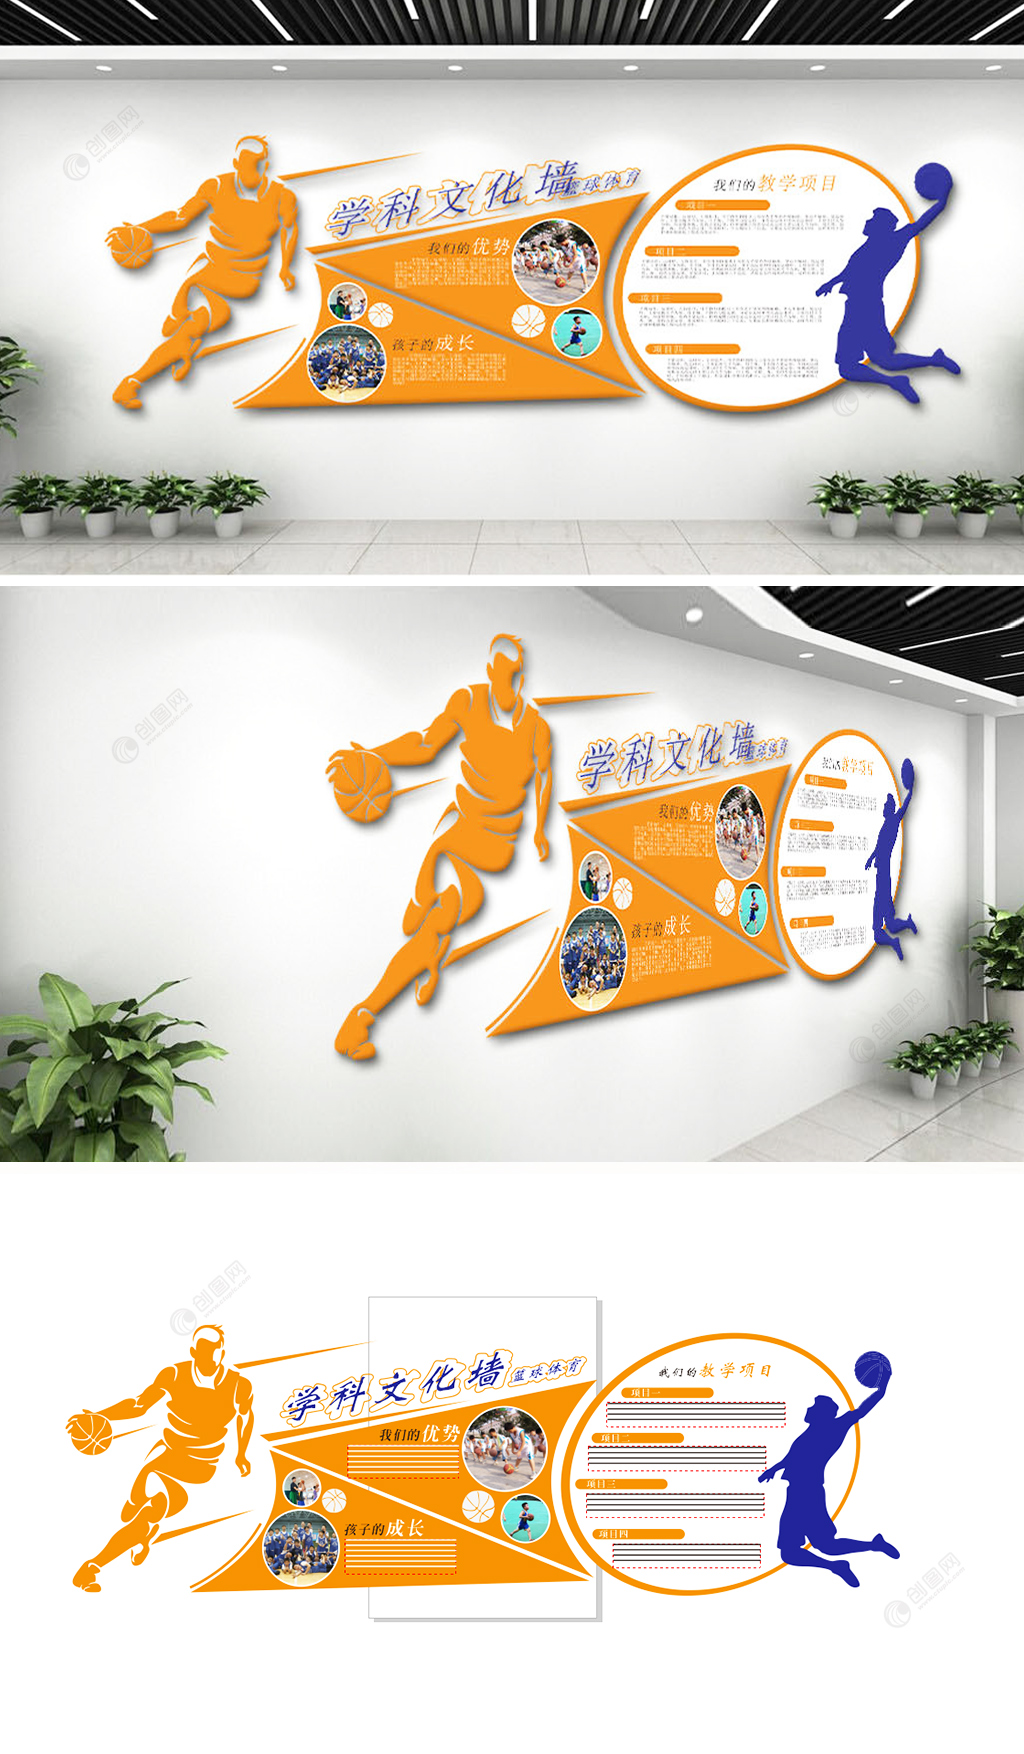 学科学校体育篮球运动文化墙设计